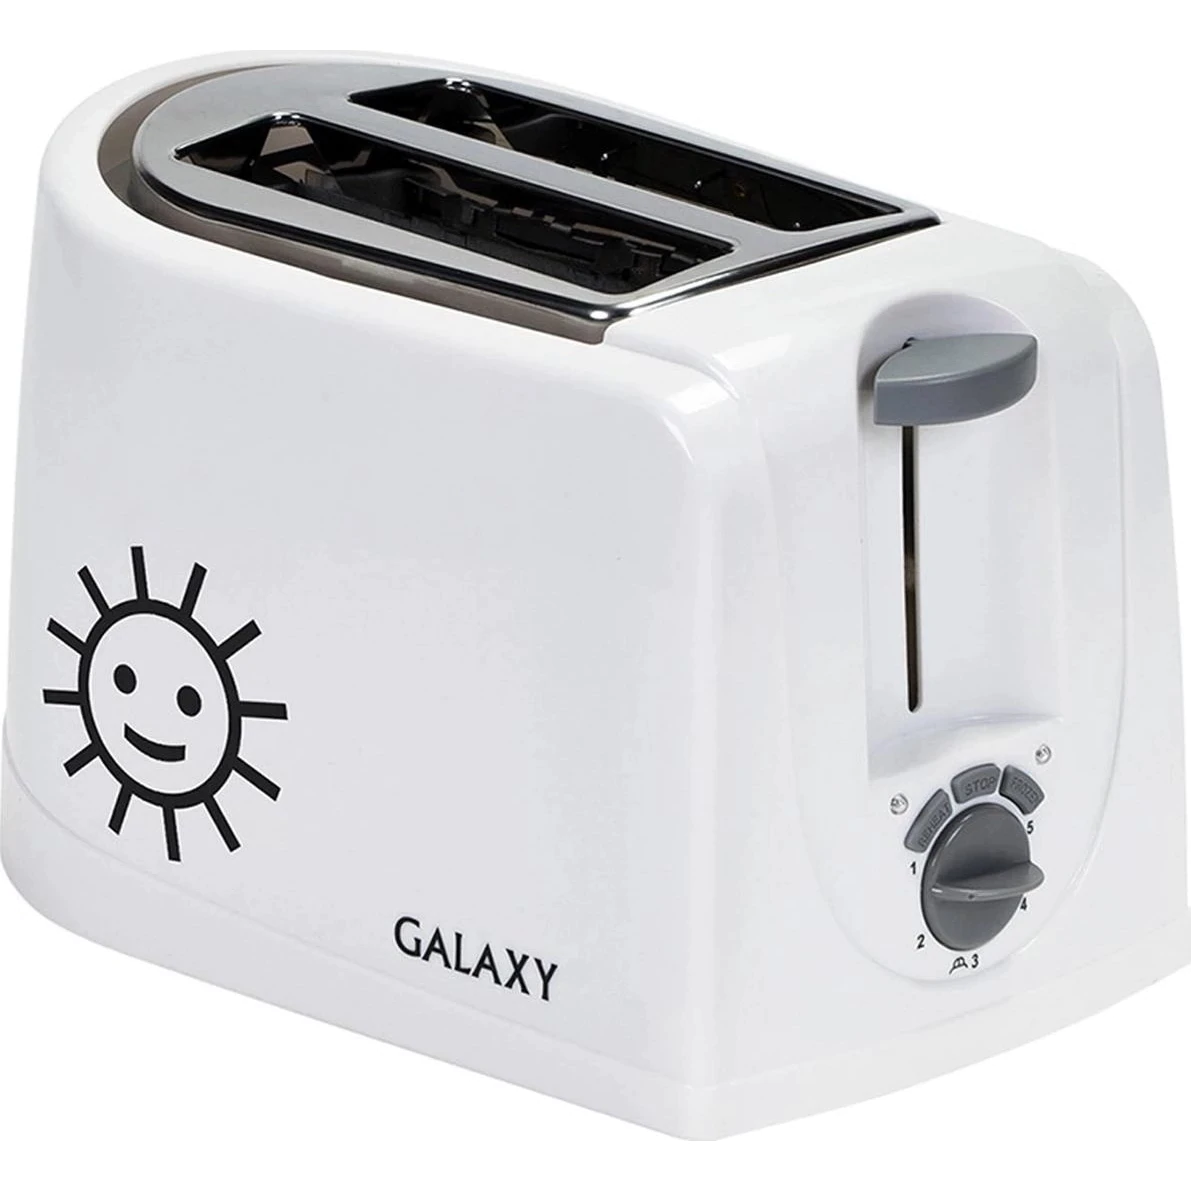 Toaster Galaxy Gl 2900 850 W Palette Fur Krumel Taste Abbrechen Vorbereitung Von Toast Mit Einem Muster Heizung Abtauung Toaster Aliexpress